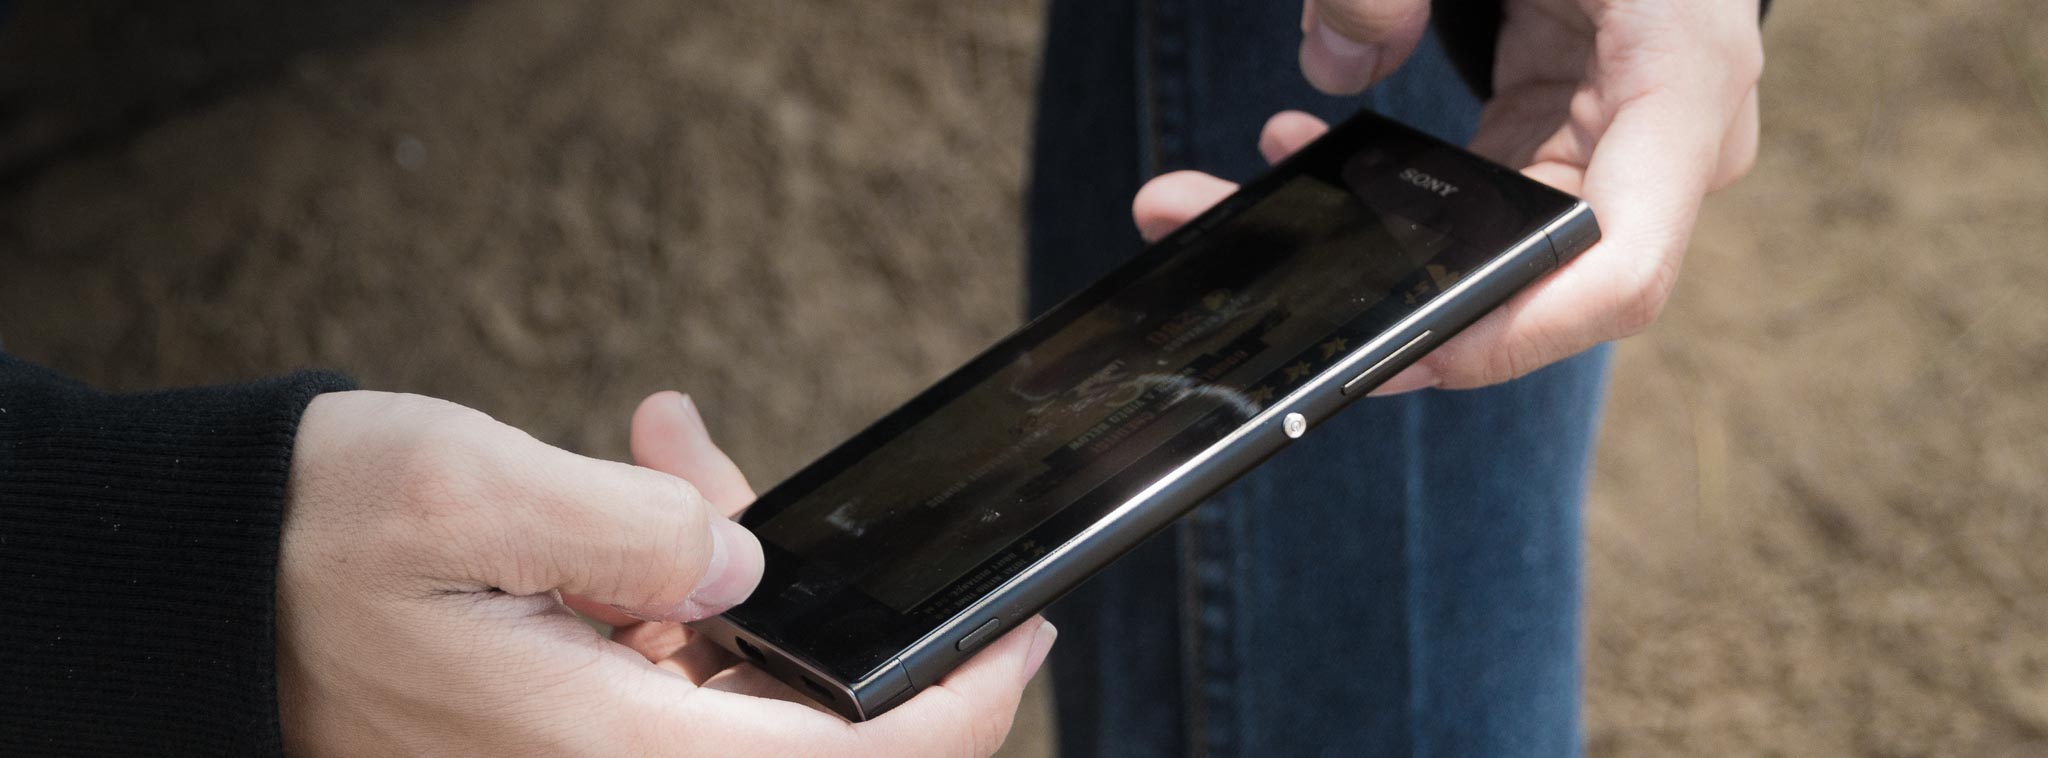 Thêm 1 smartphone Sony chạy Android 8 lộ diện trên GFXBench